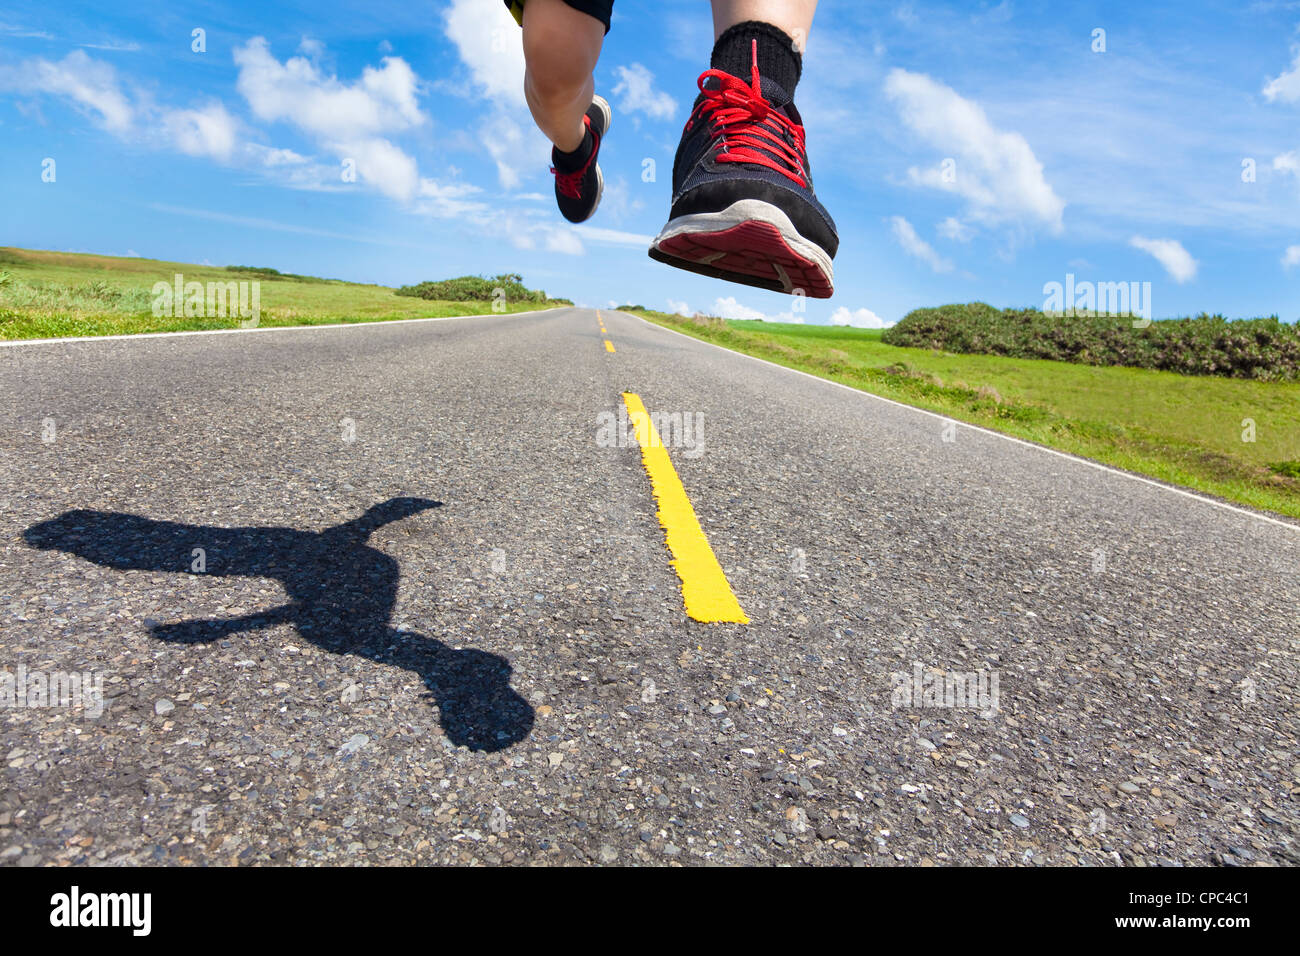 die Beine und Schuhe des Läufers in Aktion auf der Straße Stockfoto